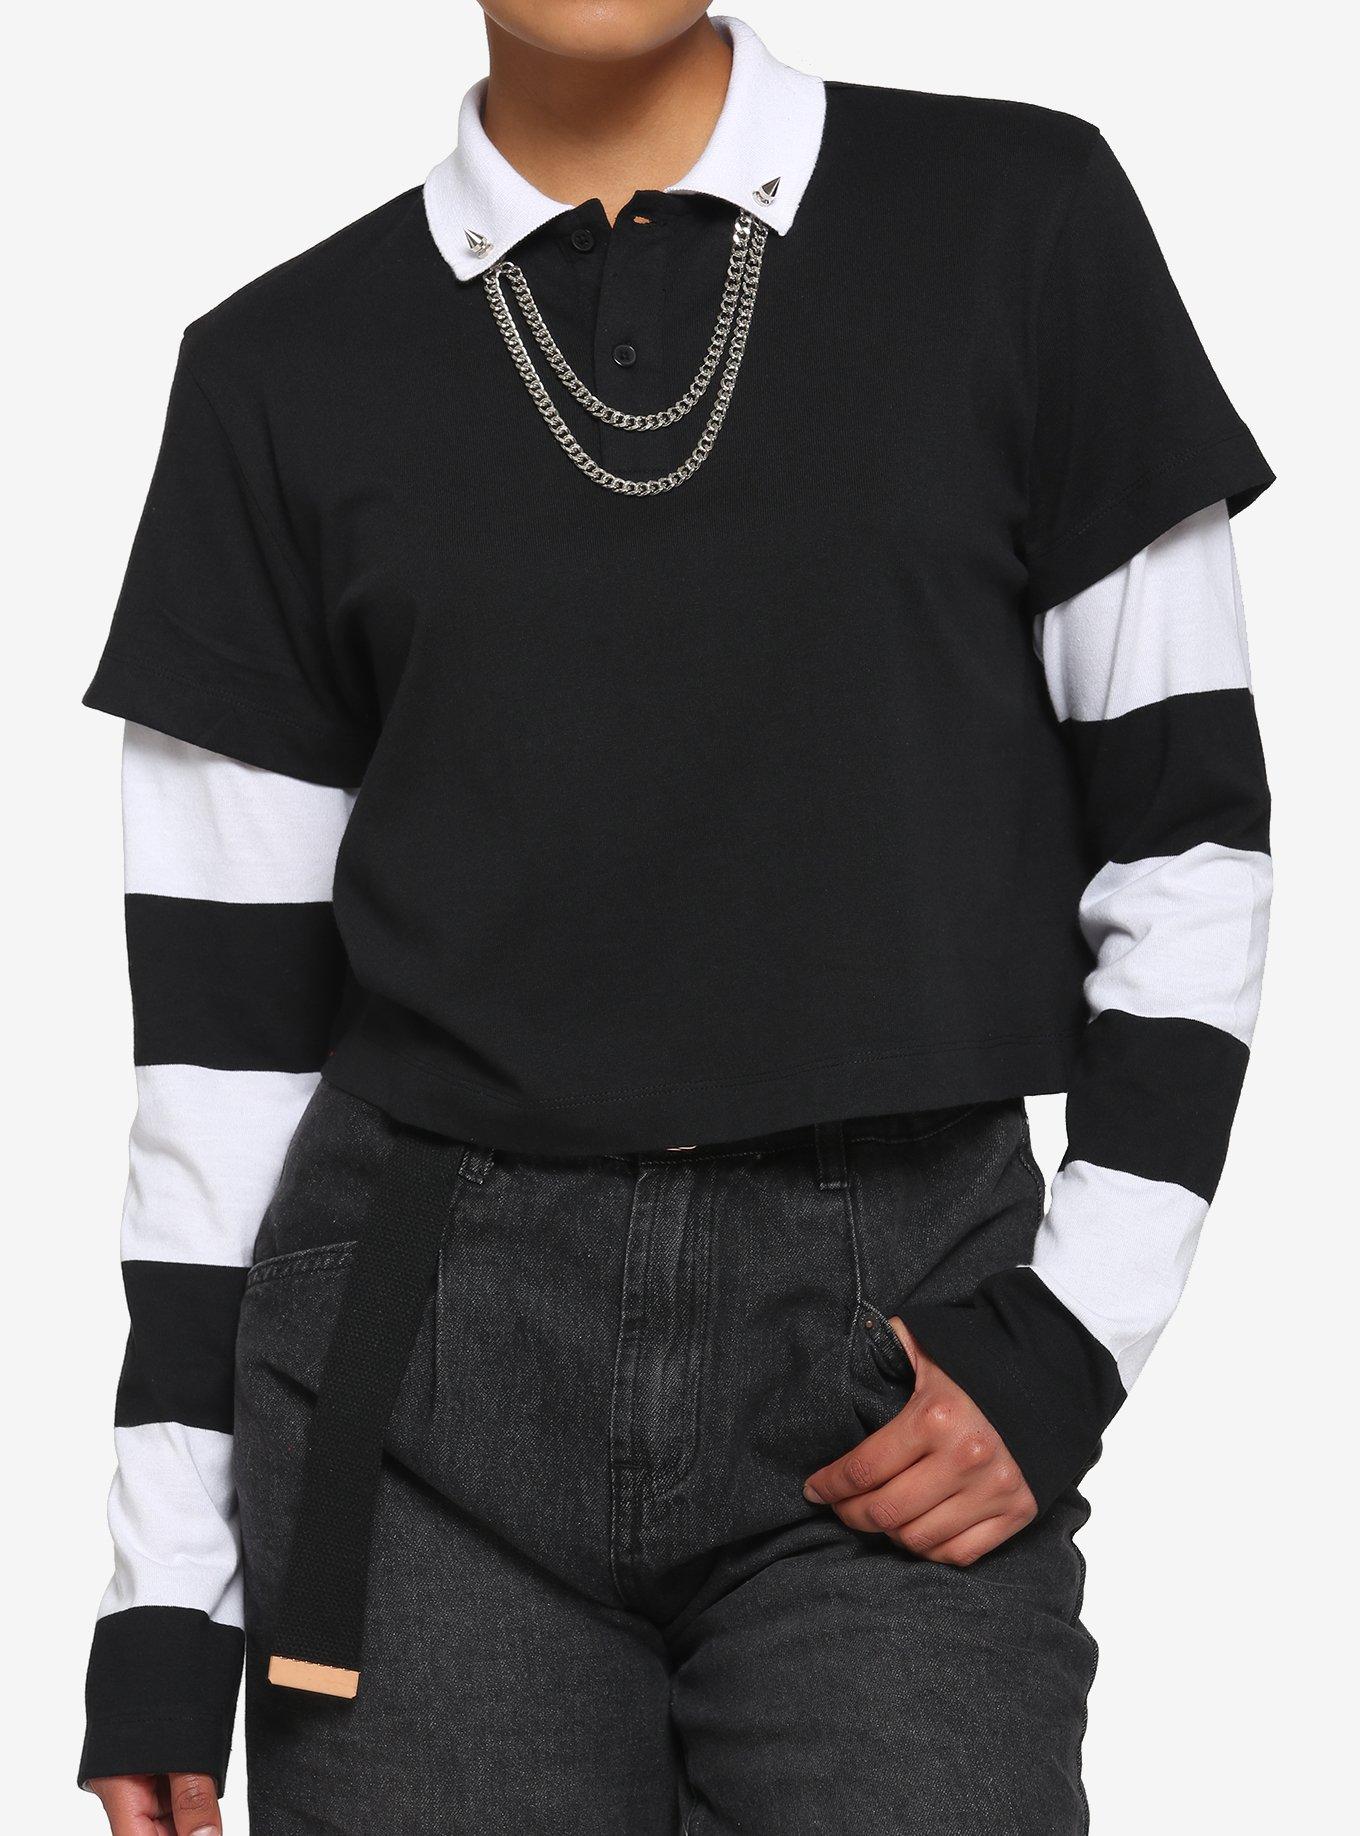 Black Stripe Collar Polo Long Sleeve Crop Top